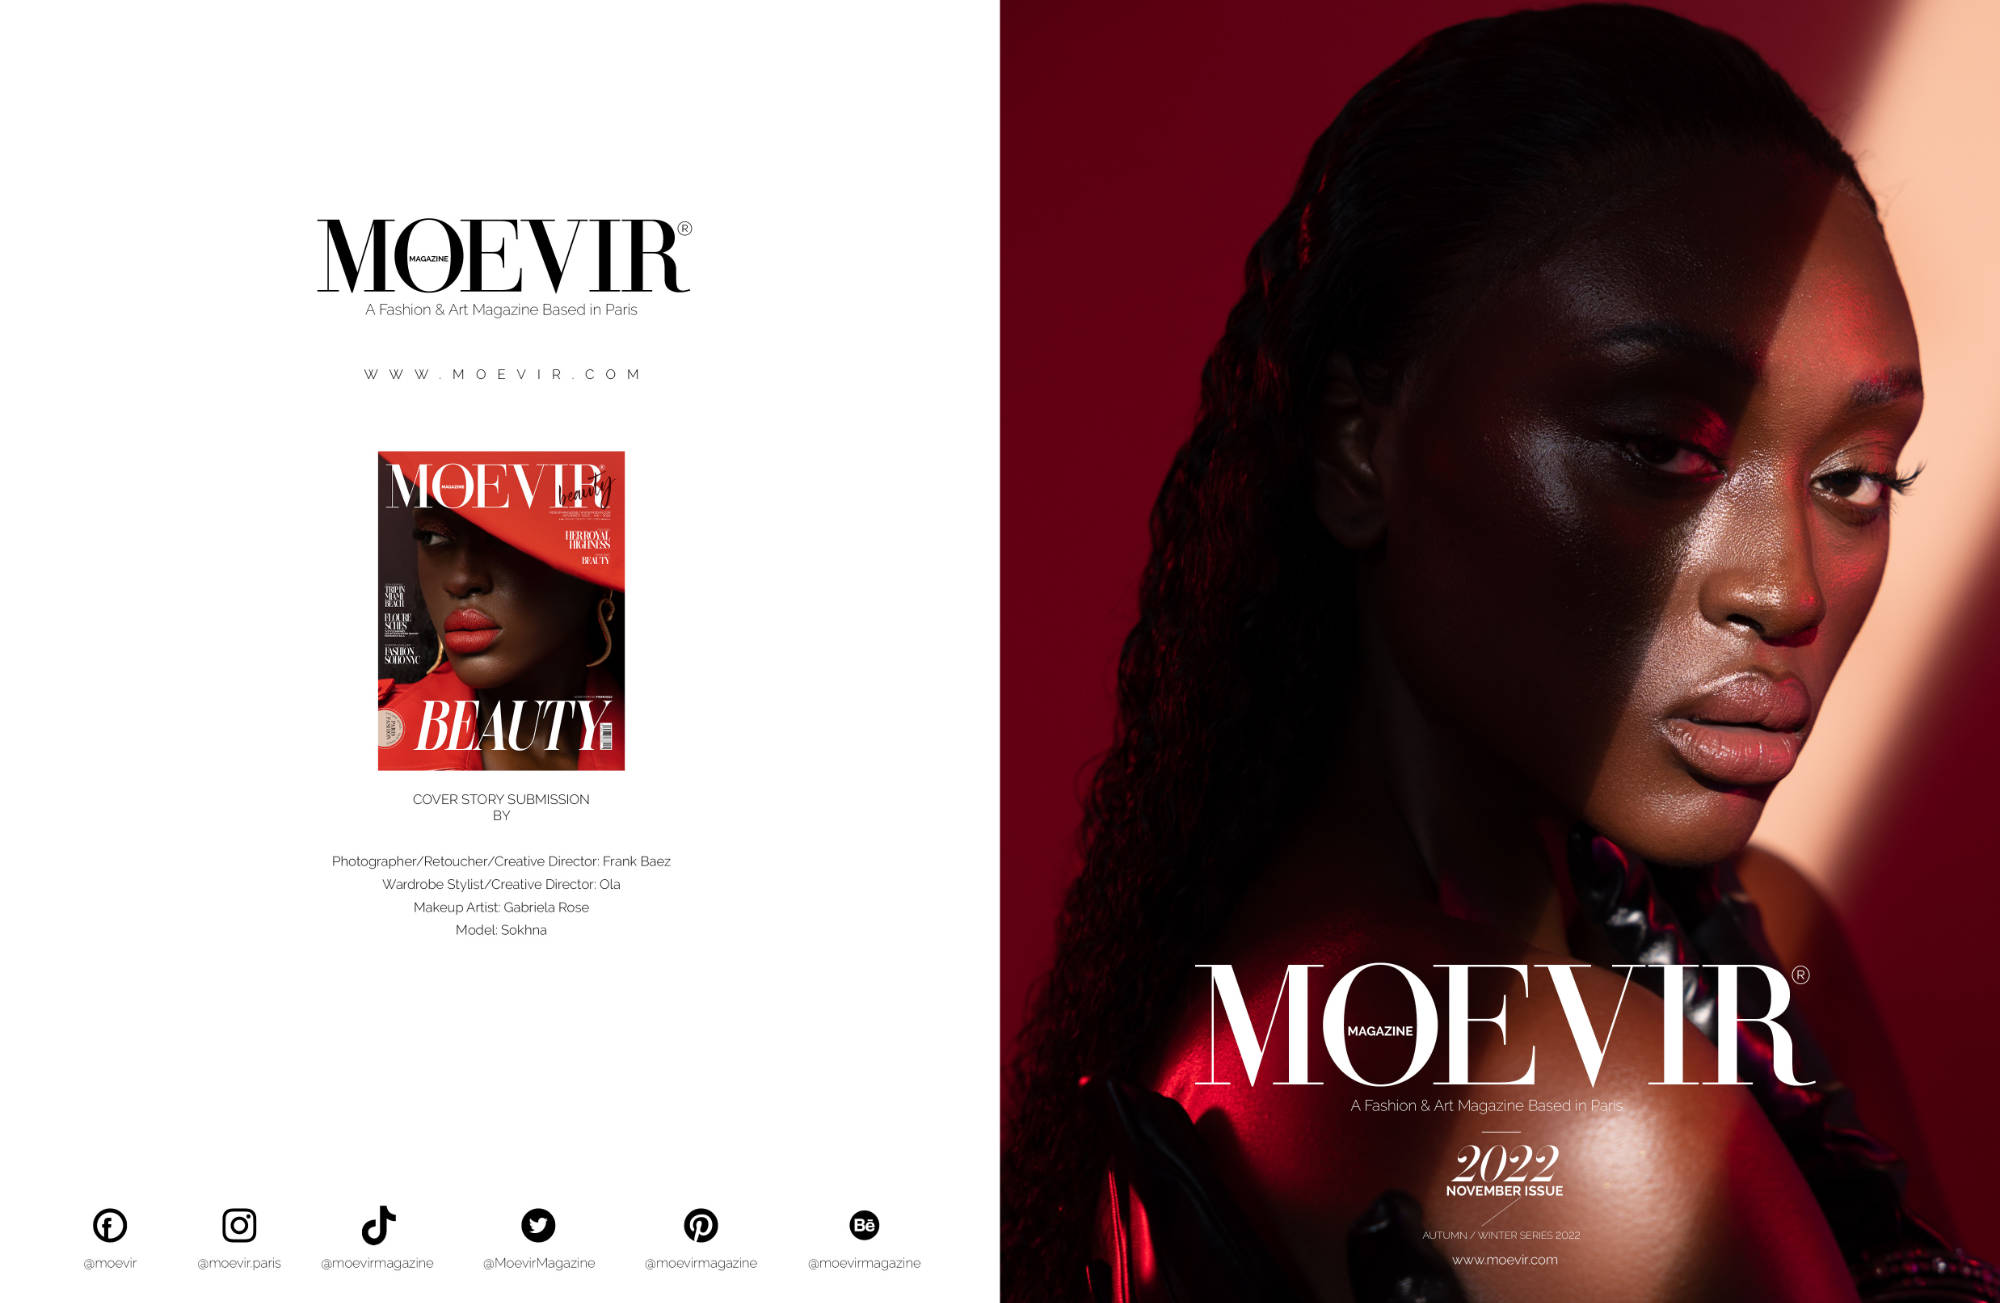 Wolfish beauty | Moevir Magazine - November Issue 2022